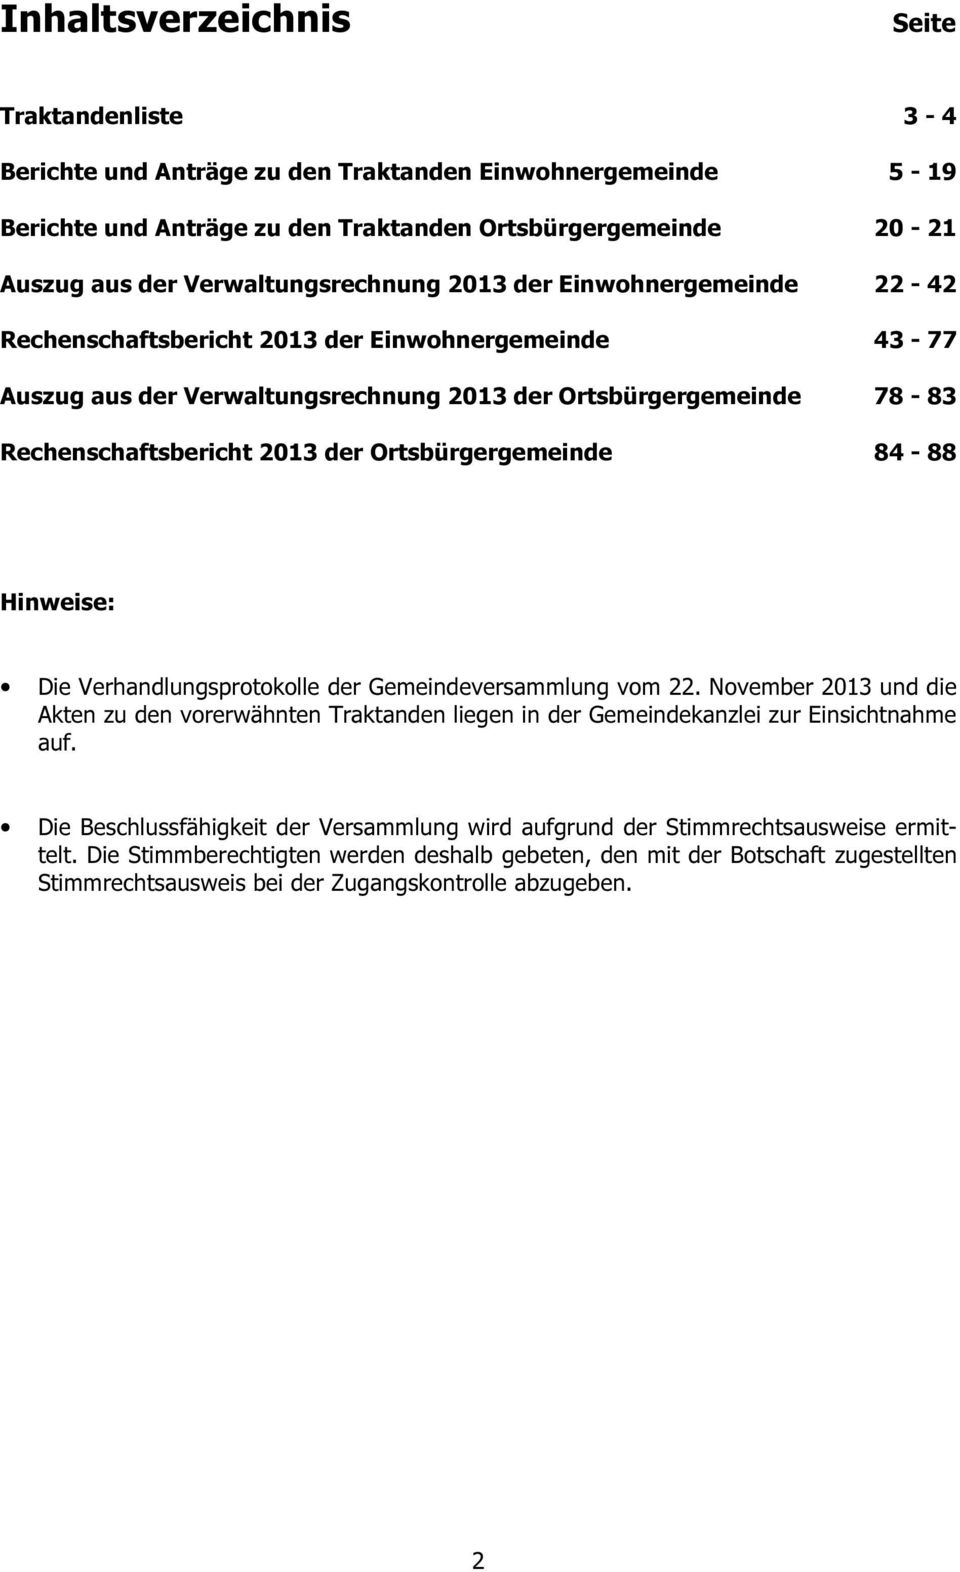 2013 der Ortsbürgergemeinde 84-88 Hinweise: Die Verhandlungsprotokolle der Gemeindeversammlung vom 22.